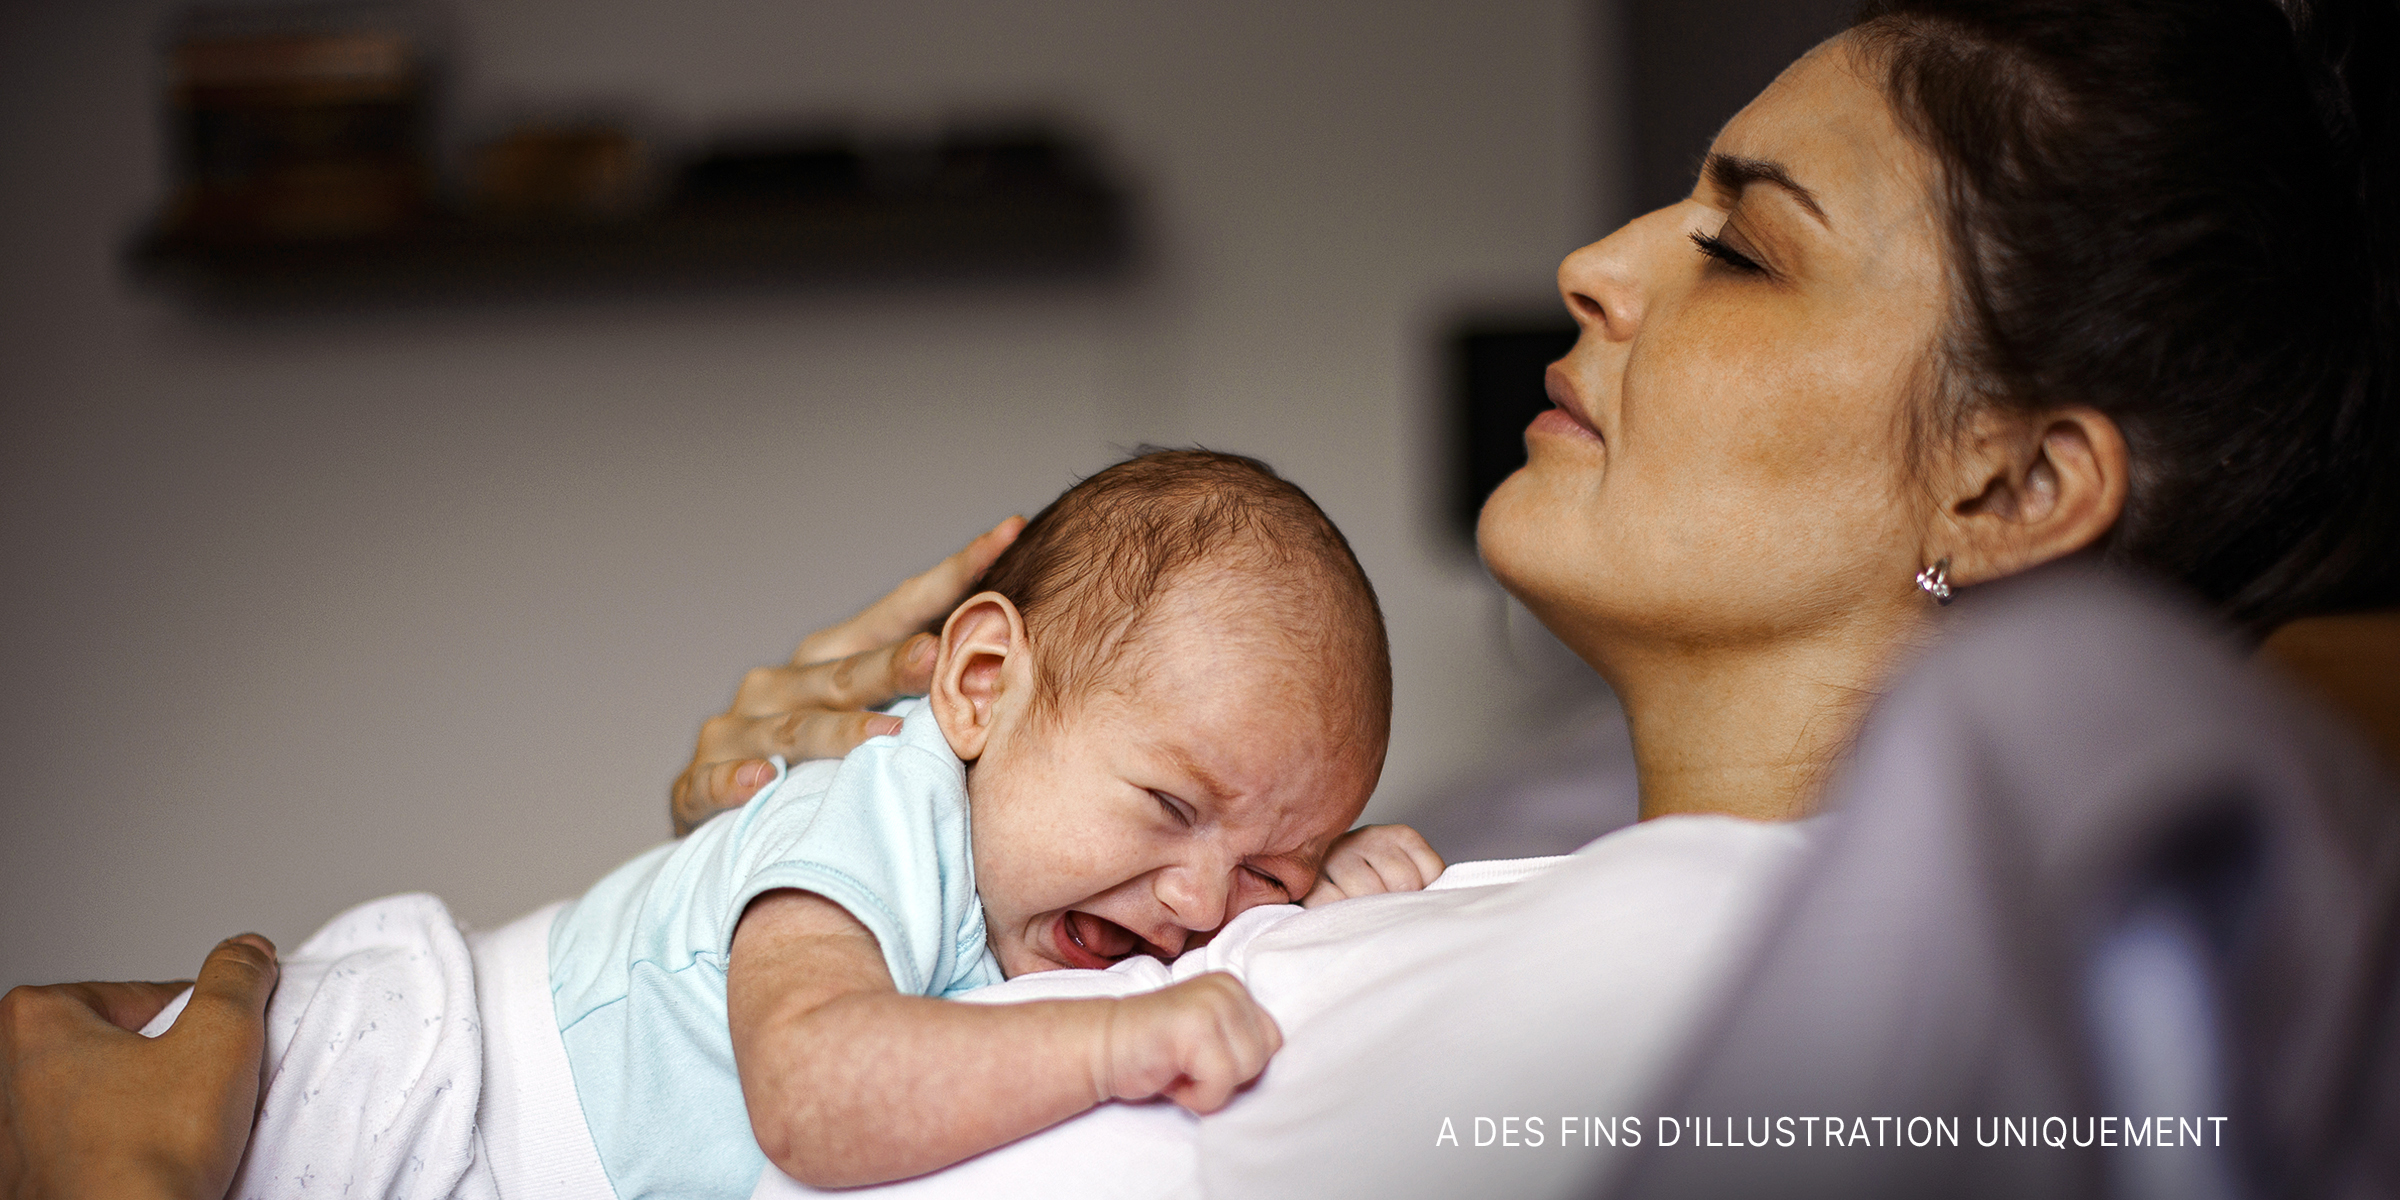 Une femme en détresse allongée avec son bébé en pleurs sur la poitrine | Source : Getty Images